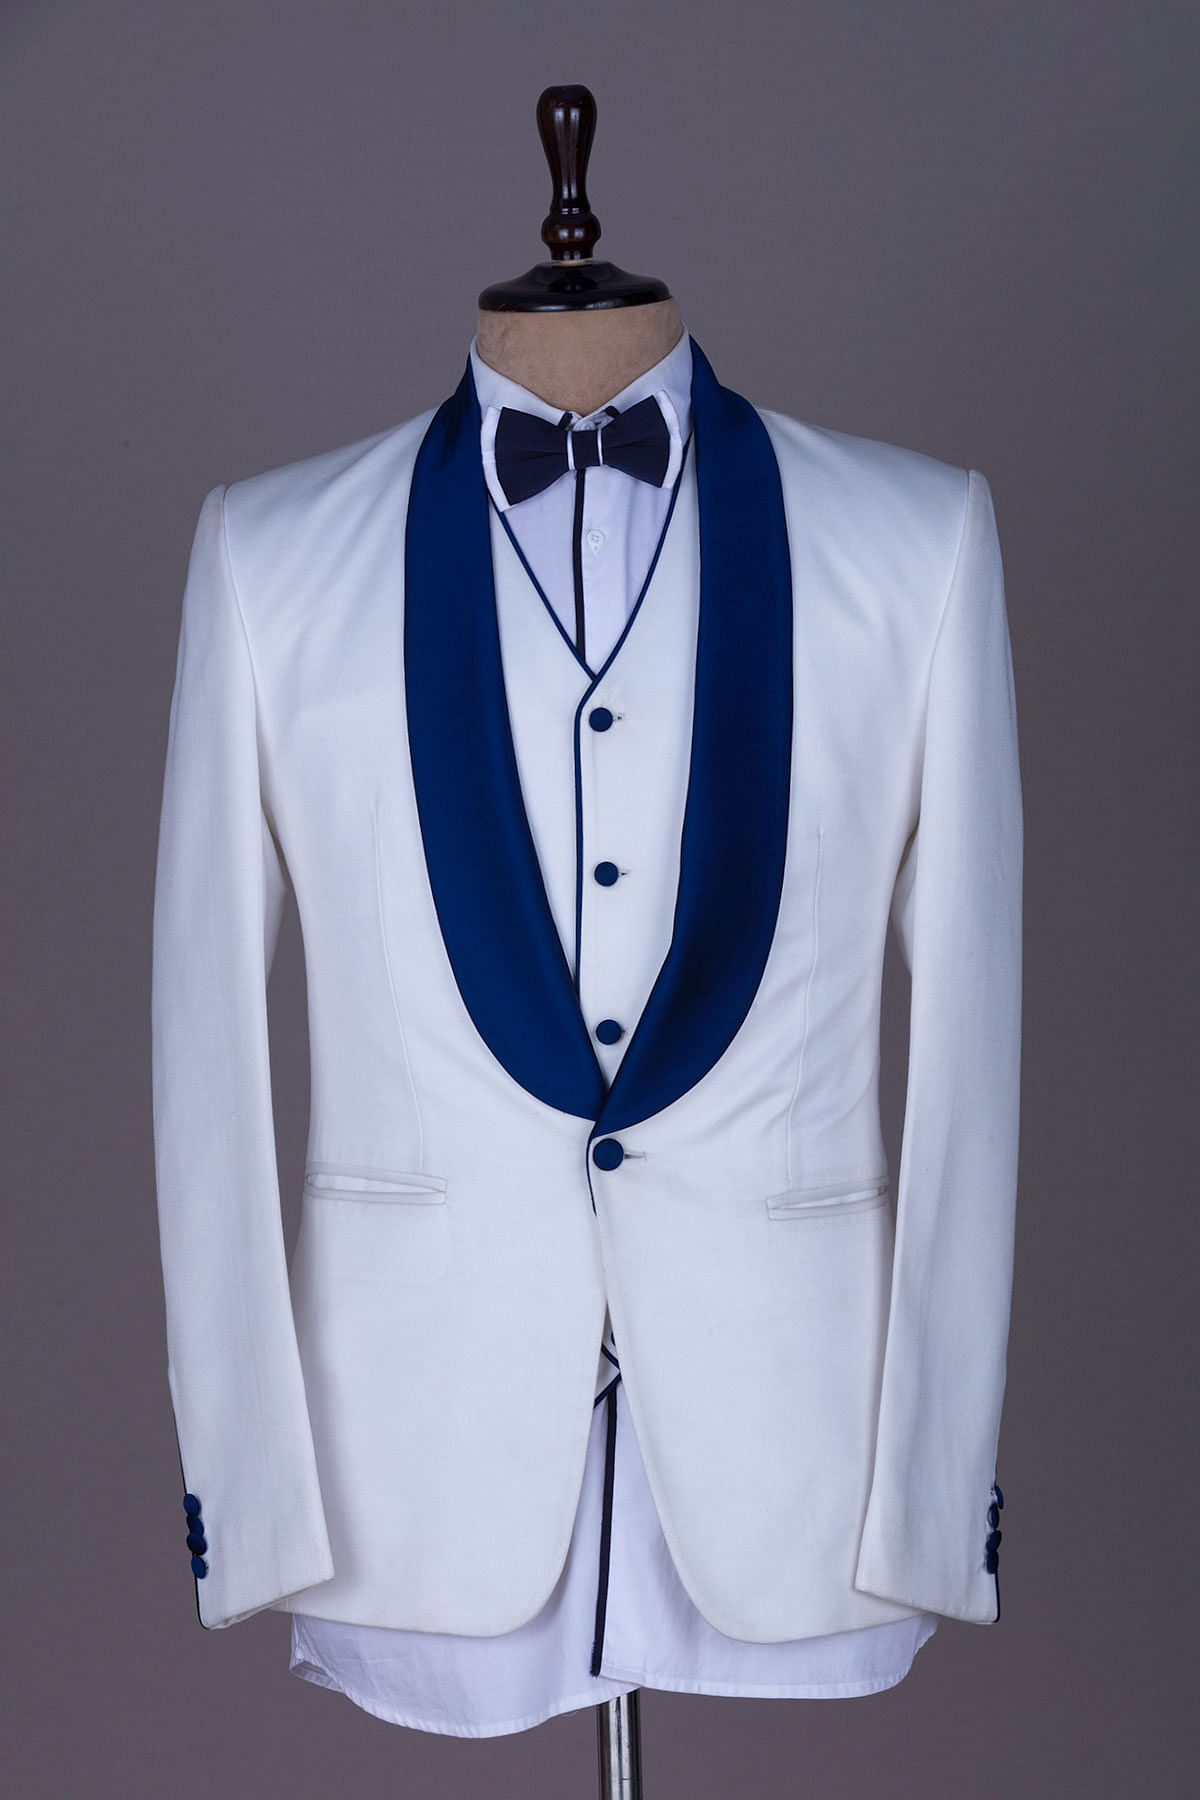 Abruzzomaster Men's One Button Royal Blue Suit Velvet Jacket Black Vest  Pants Wedding Suits Groom Tuxedos (XS=36R) at Amazon Men's Clothing store